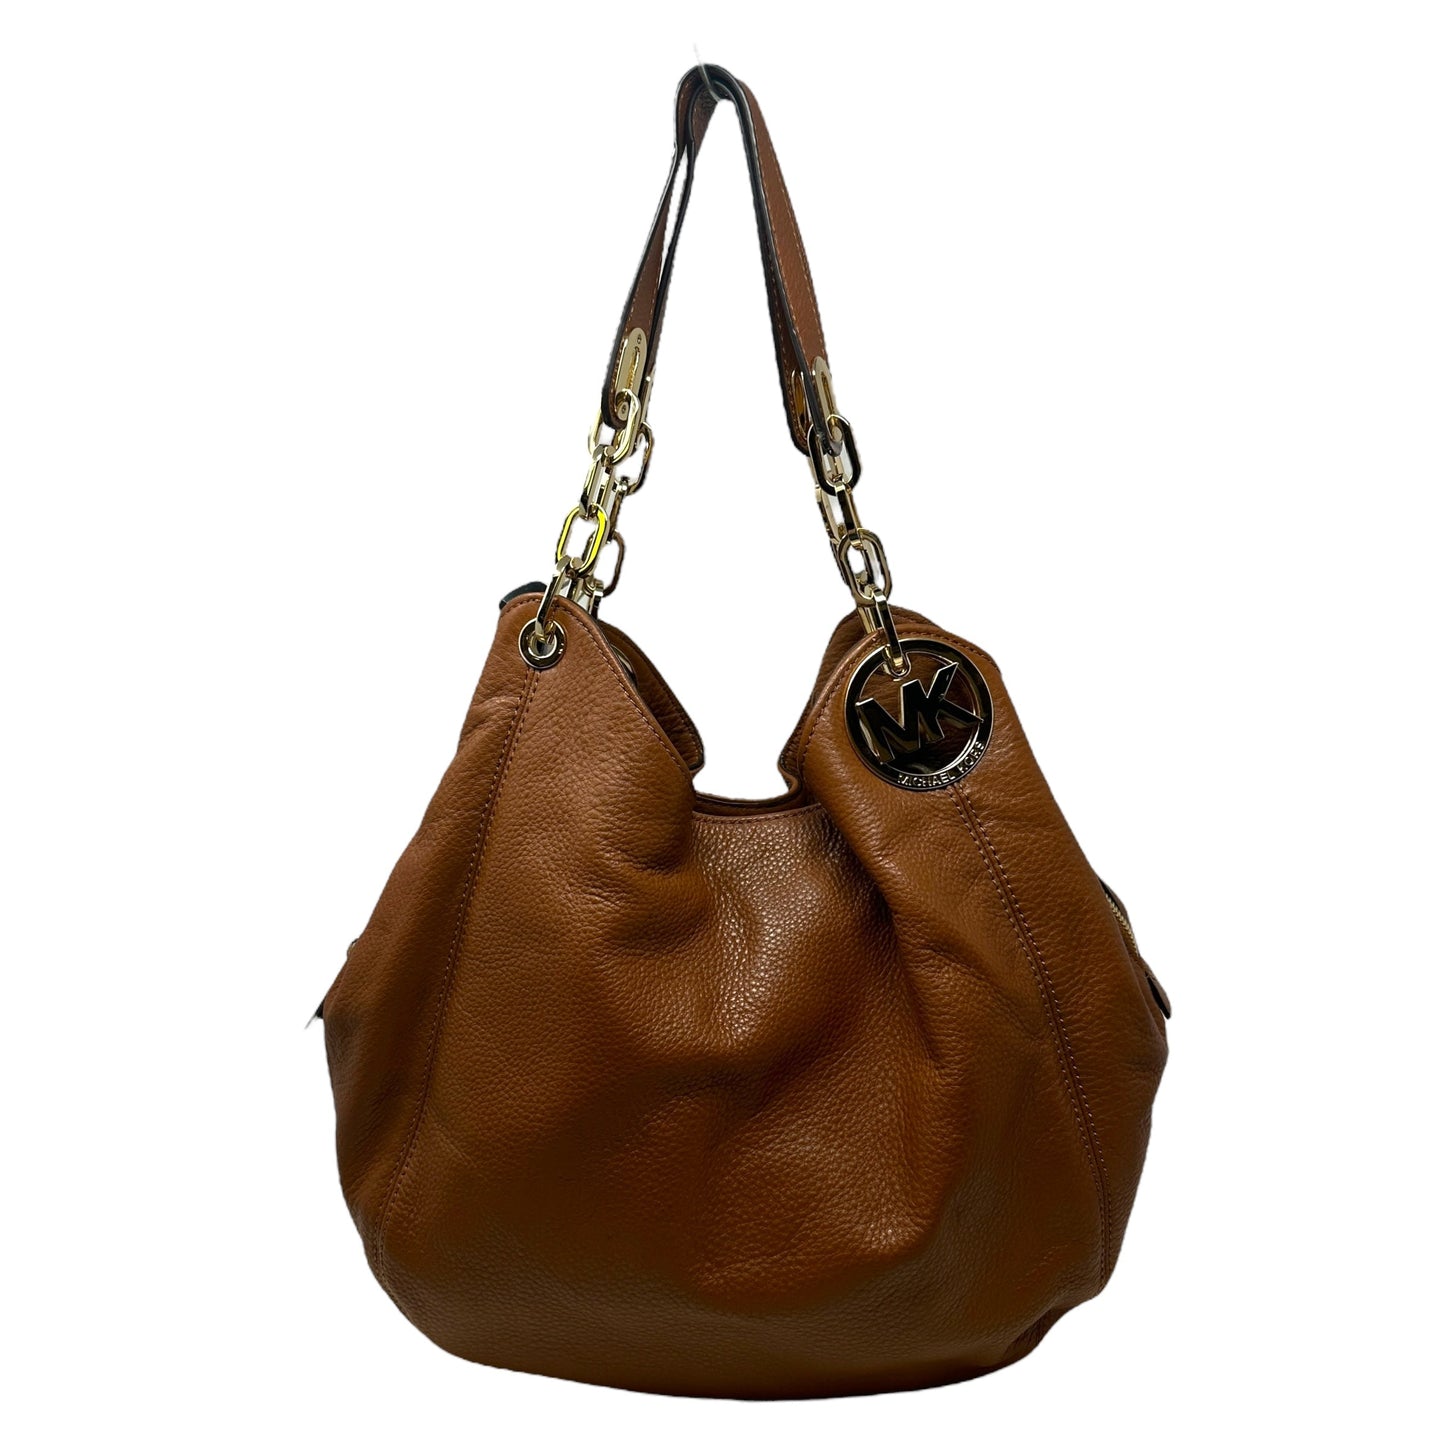 Fulton Hobo Bag Designer By Michael Kors  Size: Medium